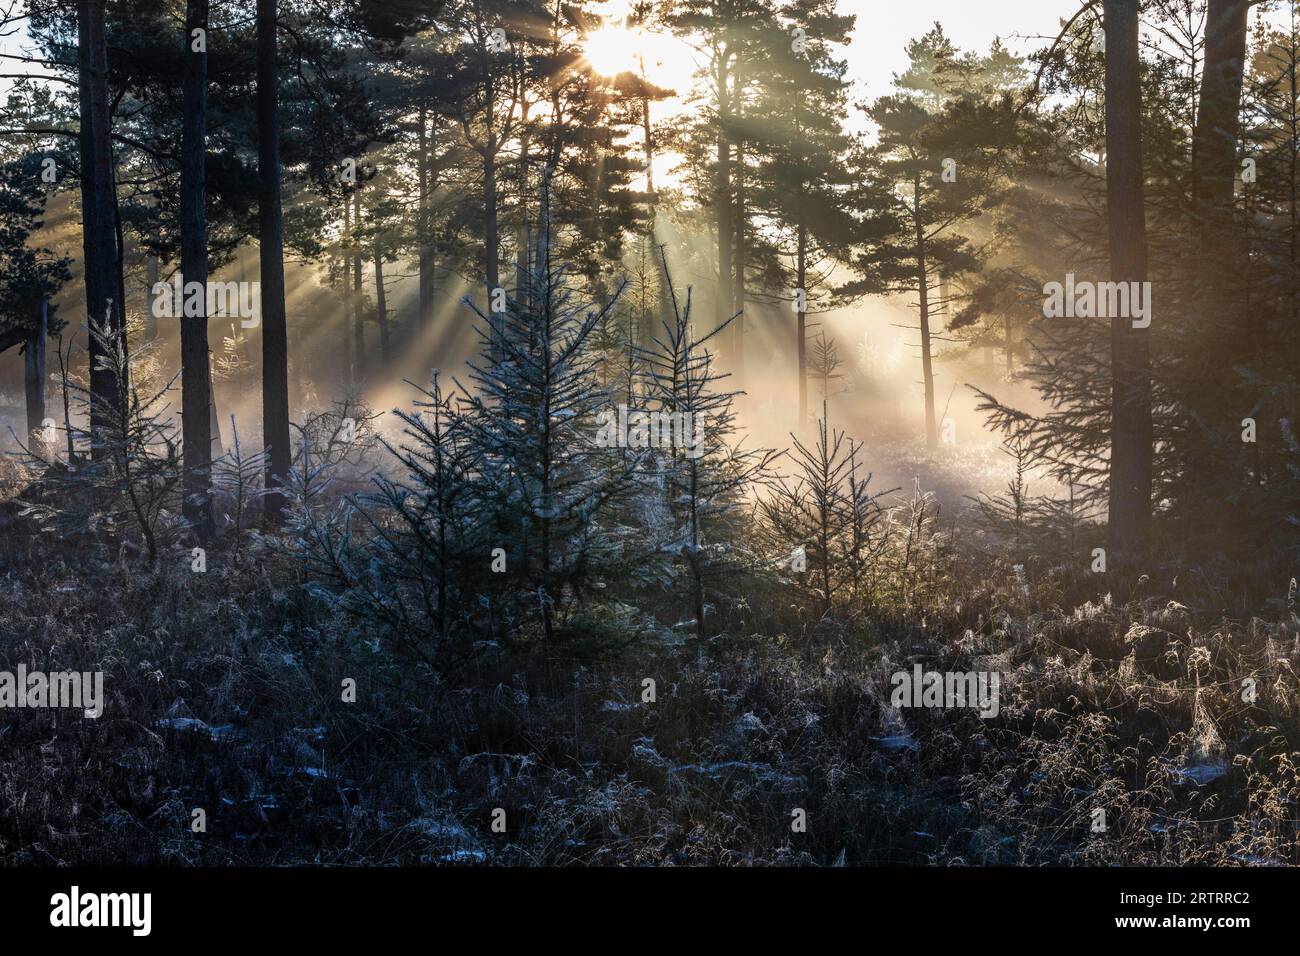 Dopo una notte fredda, i primi raggi del sole del mattino si fanno strada attraverso la nebbia in una foresta, Daenemark, Danimarca Foto Stock